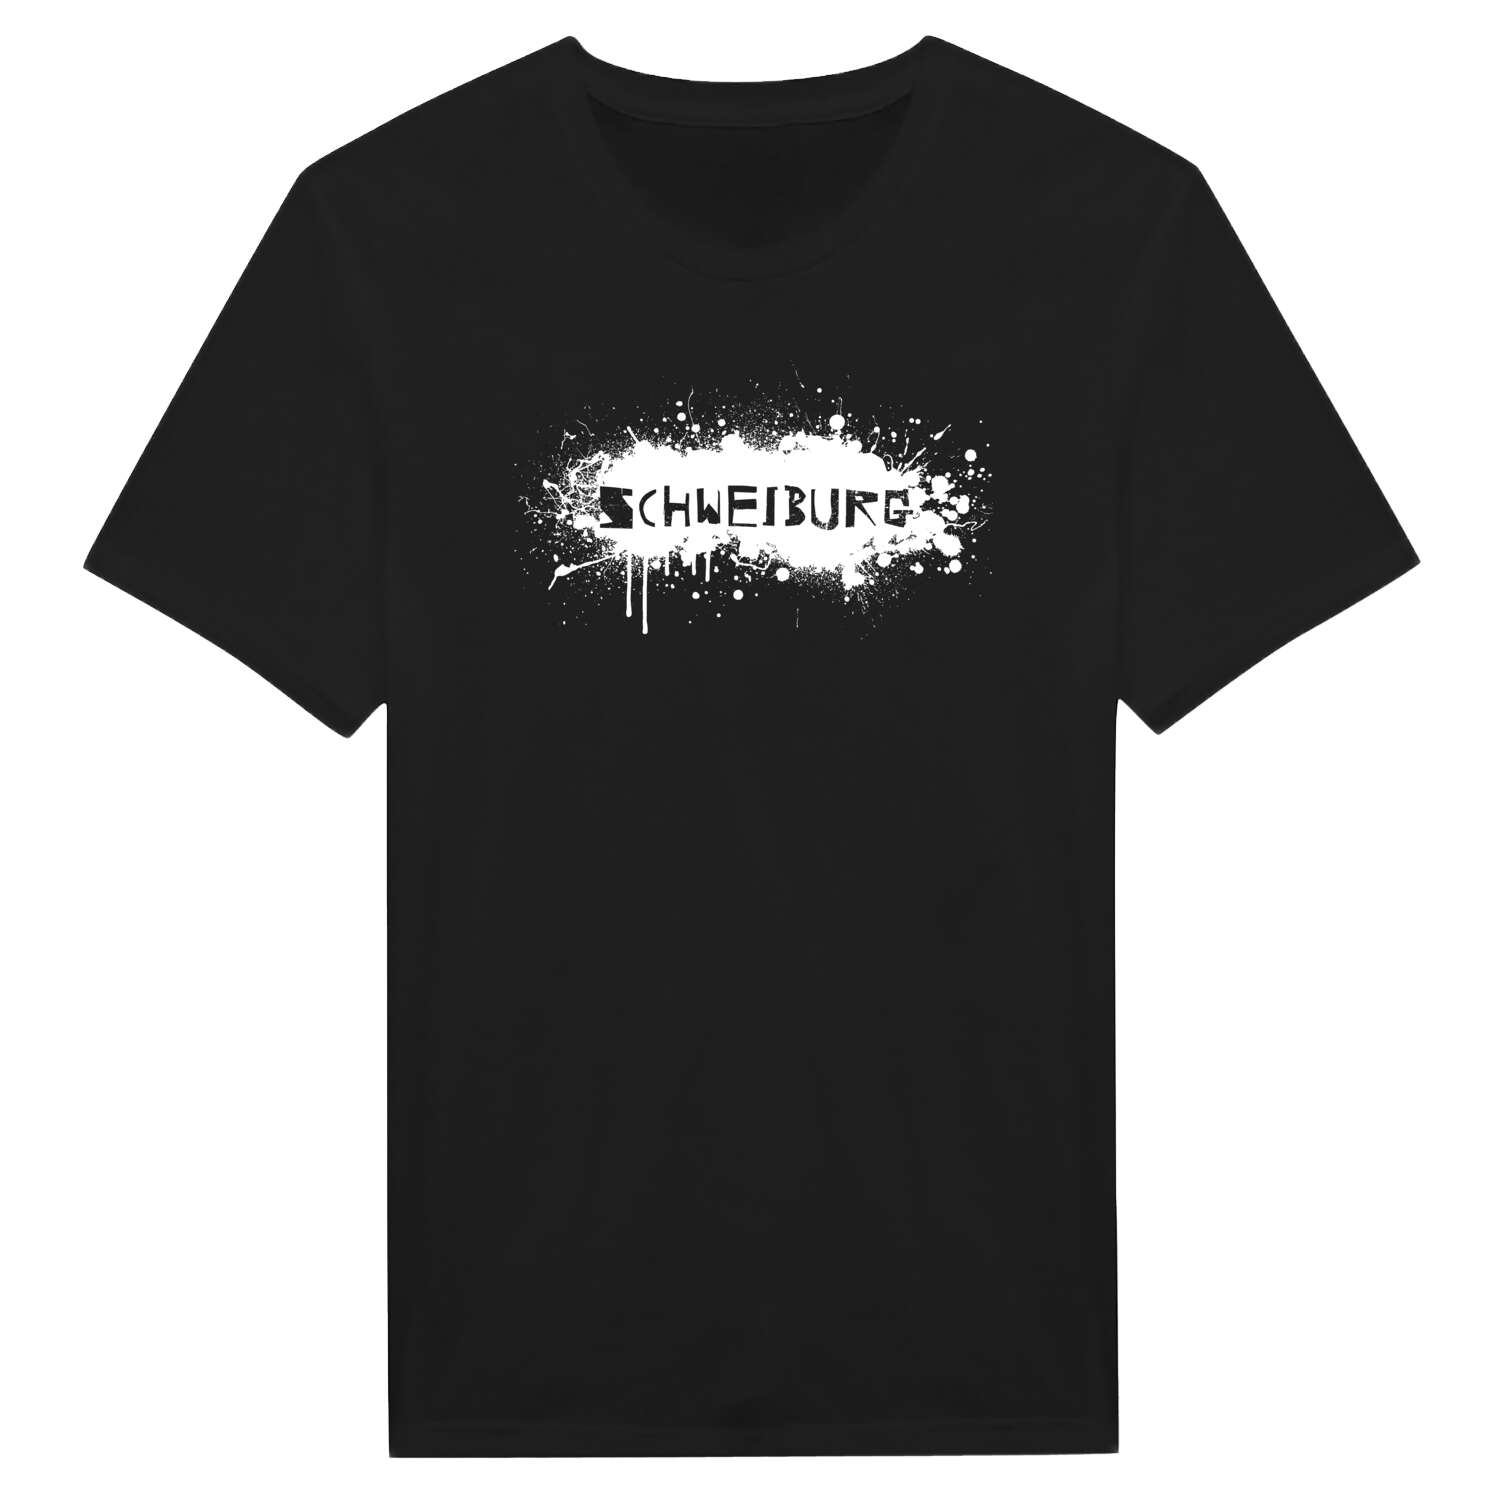 Schweiburg T-Shirt »Paint Splash Punk«